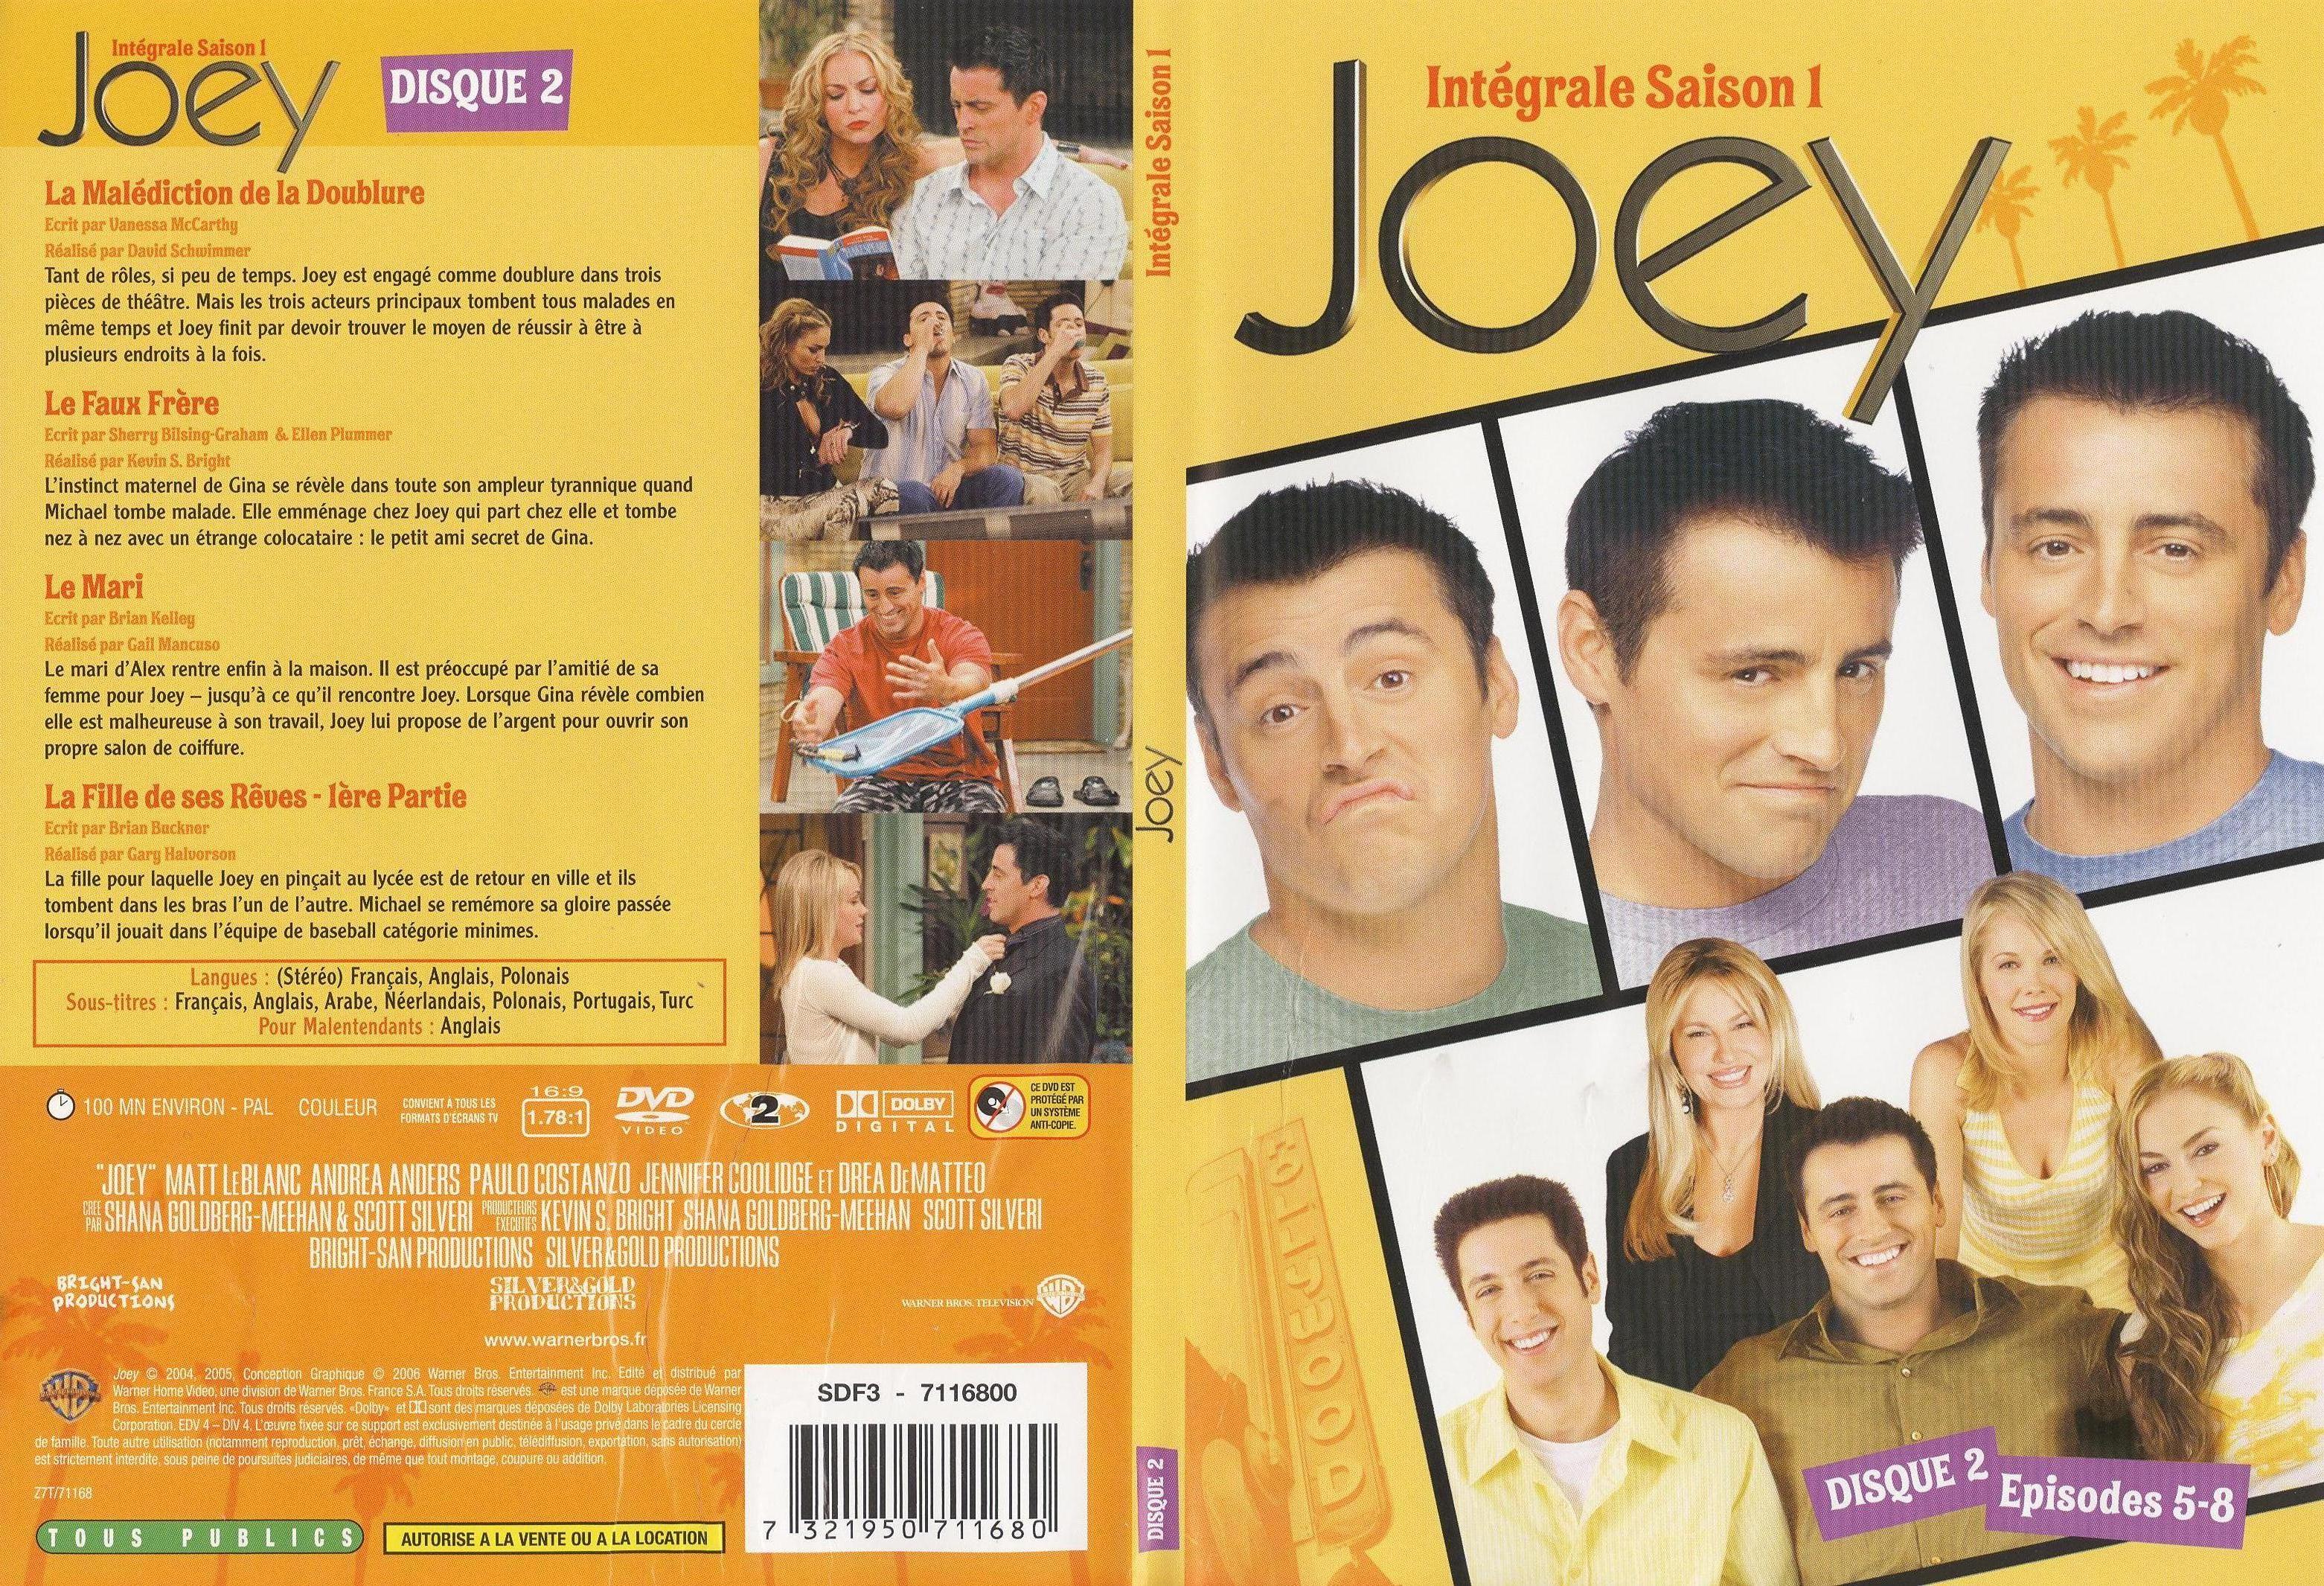 Jaquette DVD Joey Saison 1 DVD 2